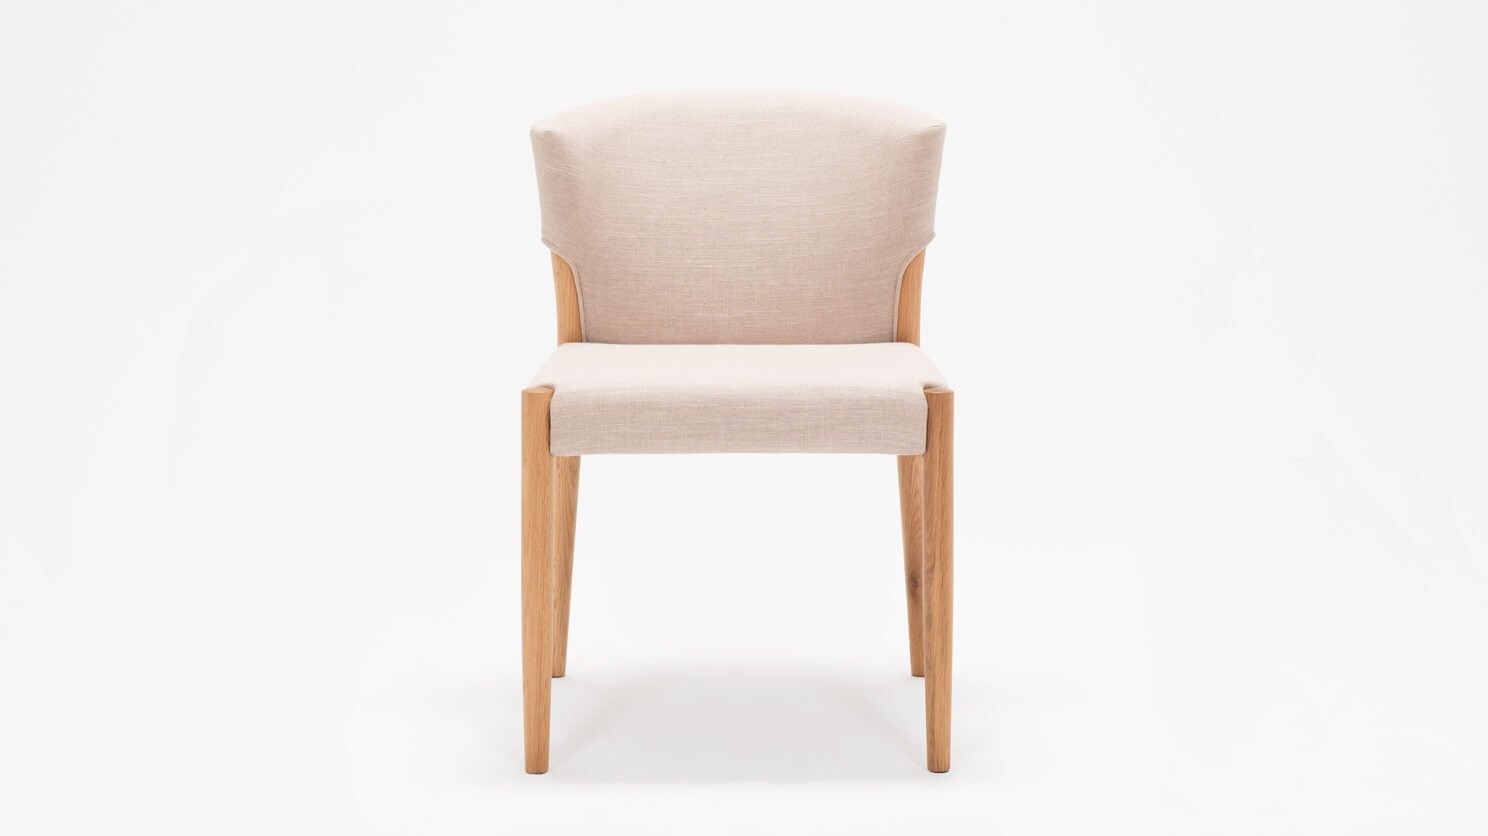 Обеденный стул Wren Dining Chair DK modern furniture